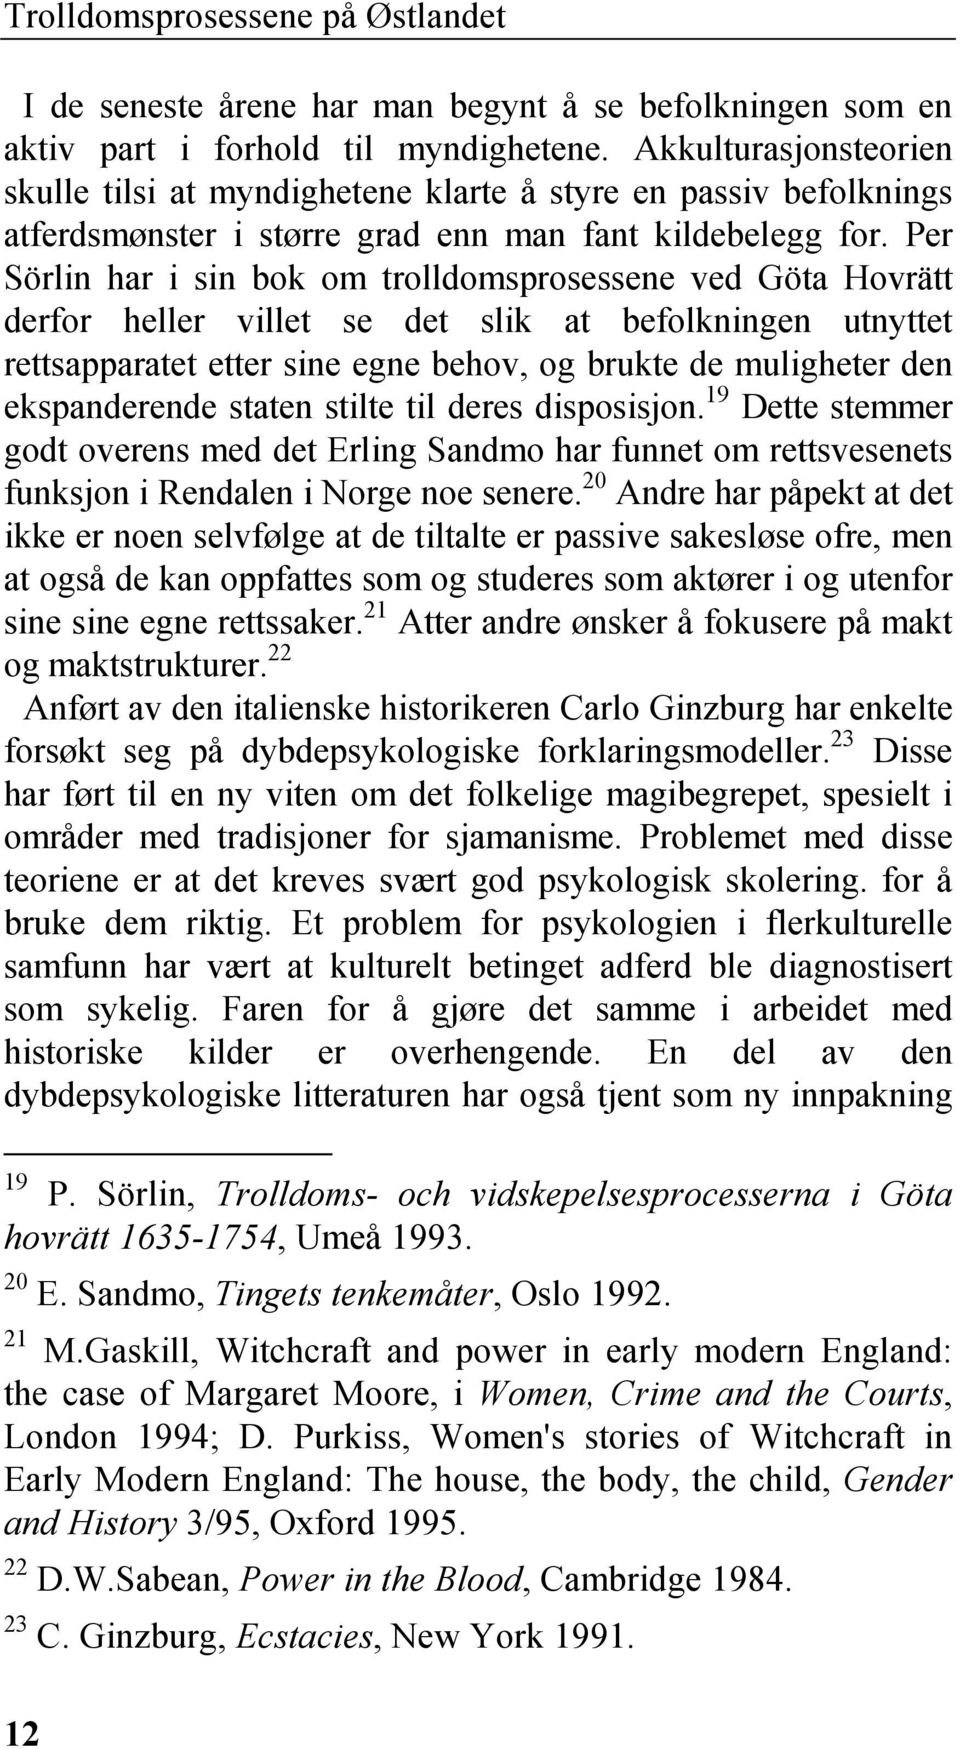 Per Sörlin har i sin bok om trolldomsprosessene ved Göta Hovrätt derfor heller villet se det slik at befolkningen utnyttet rettsapparatet etter sine egne behov, og brukte de muligheter den